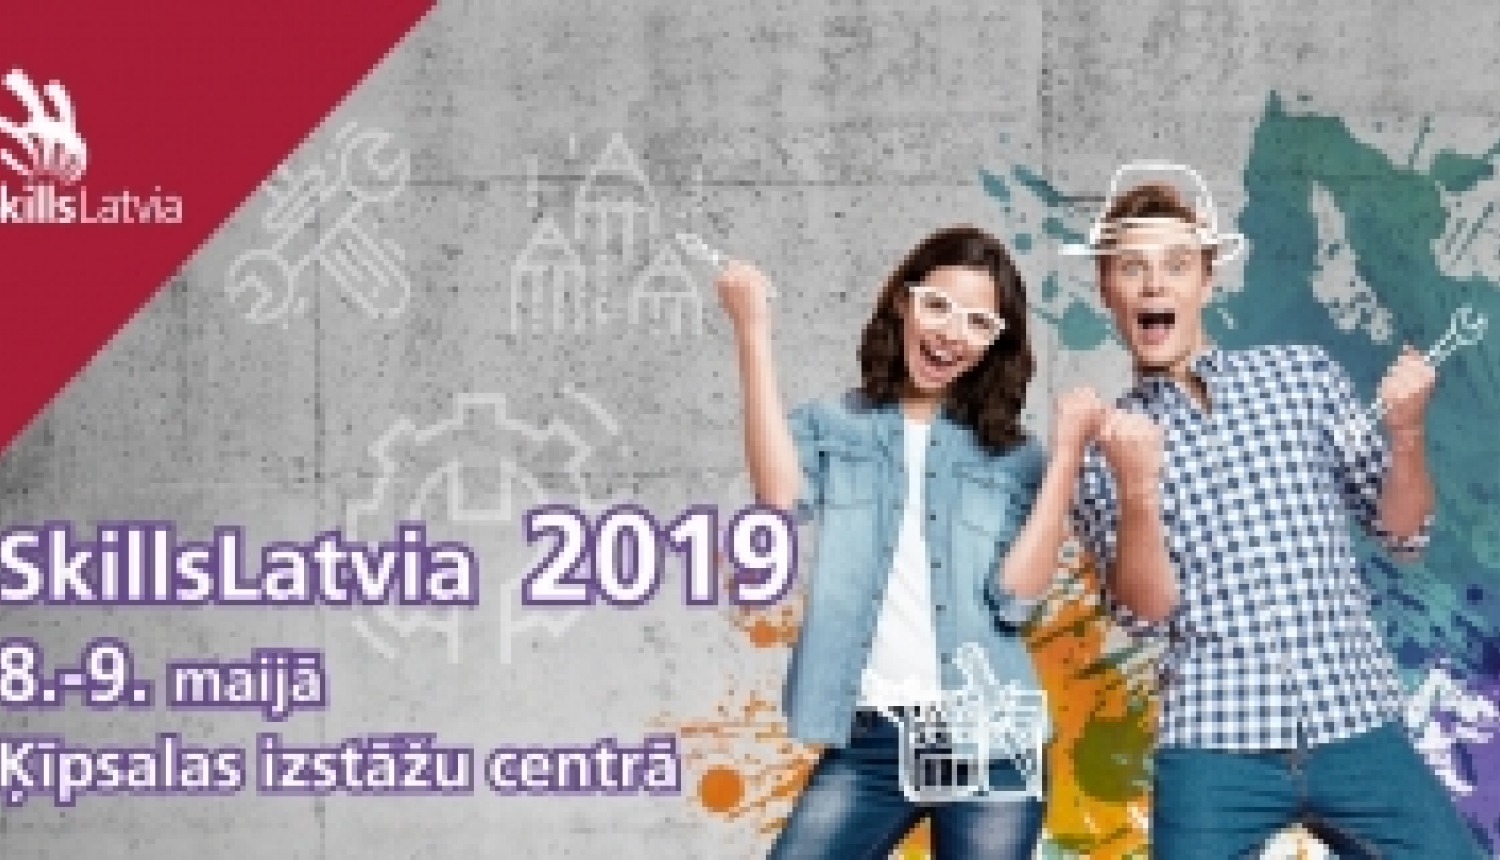 Konkurss SkillsLatvia 2019 noteiks labākos jaunos profesionāļus Latvijā